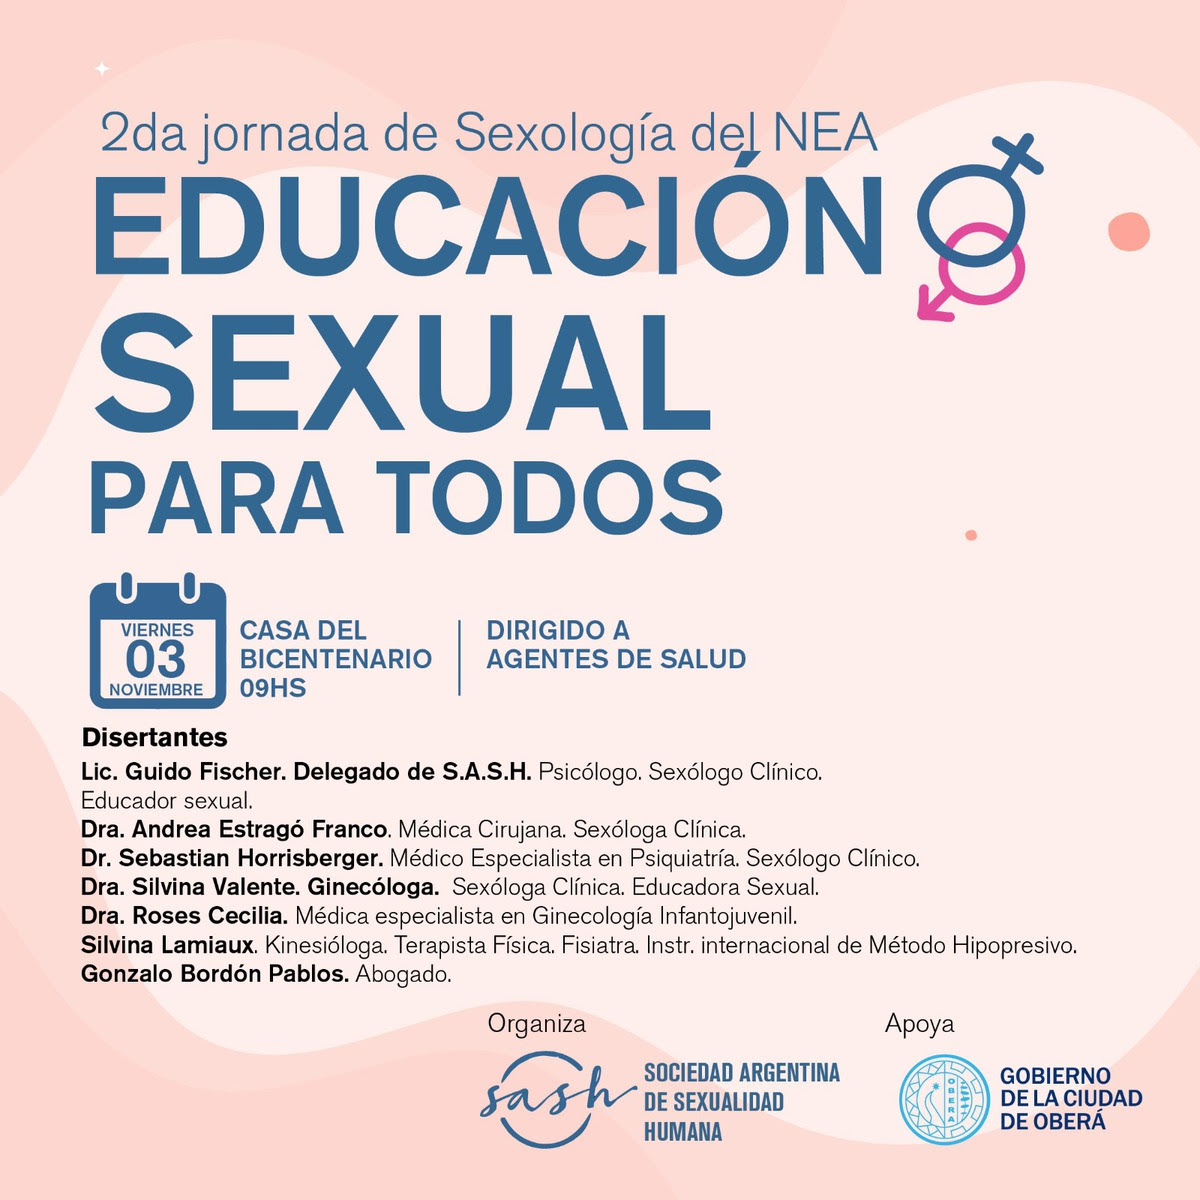 Oberá será sede de la 2da Jornada de Sexualidad Humana del Nacional del NEA imagen-2